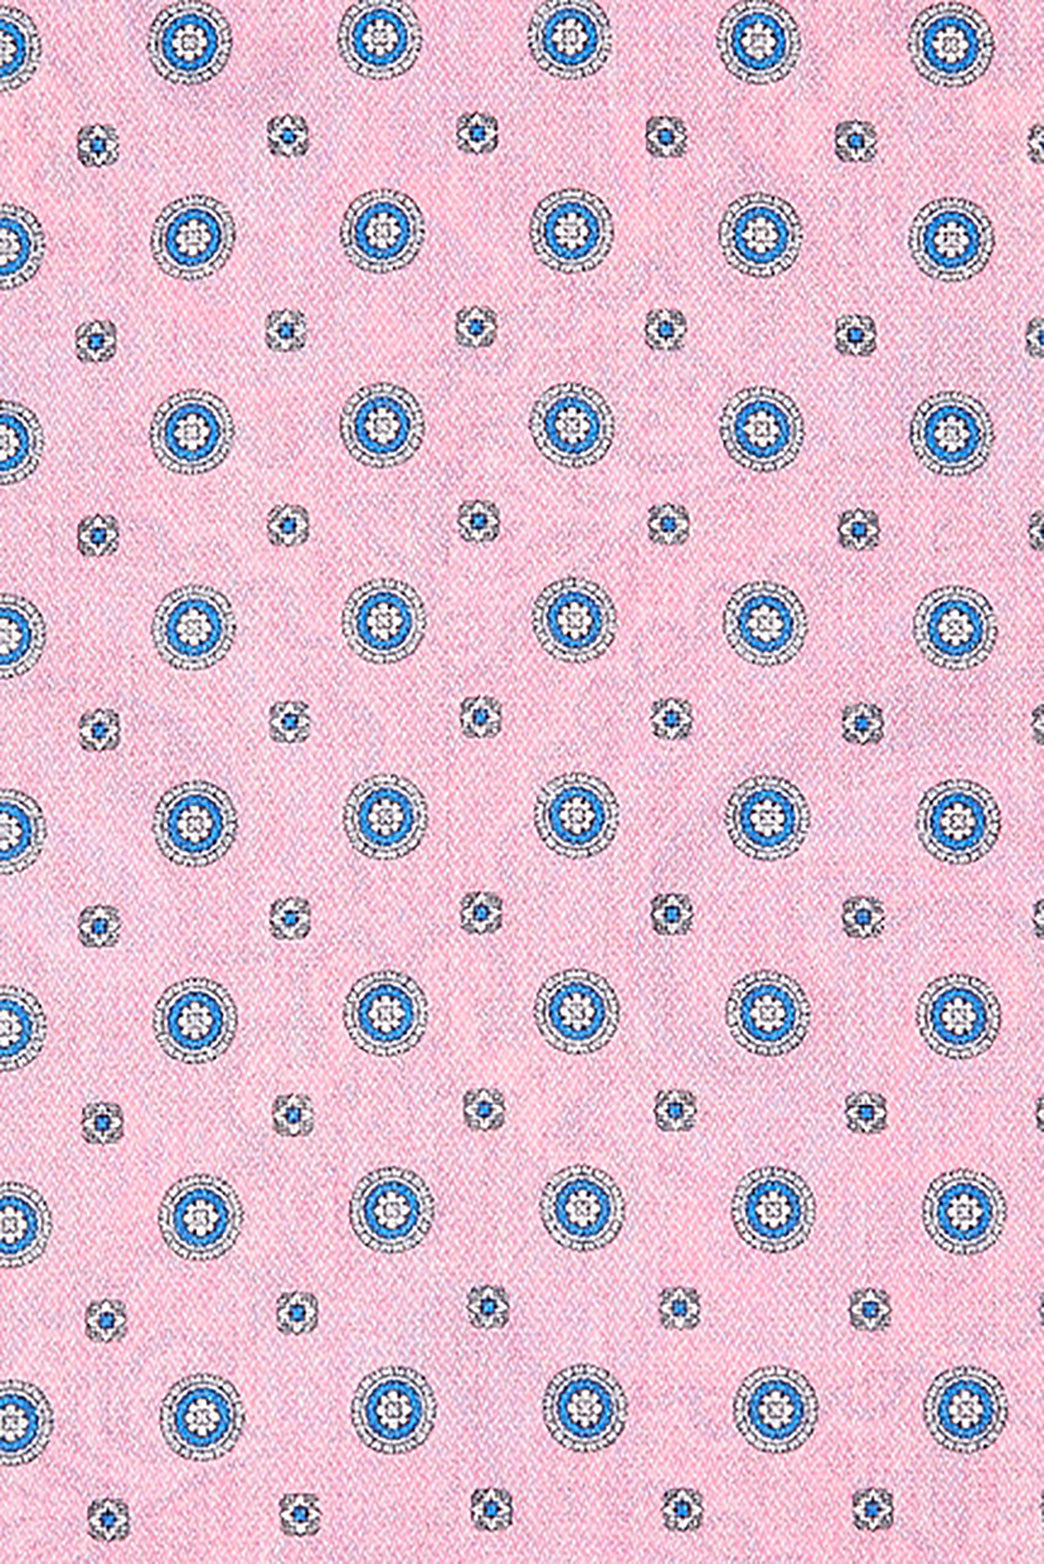 baglivi-pocket-square-pink